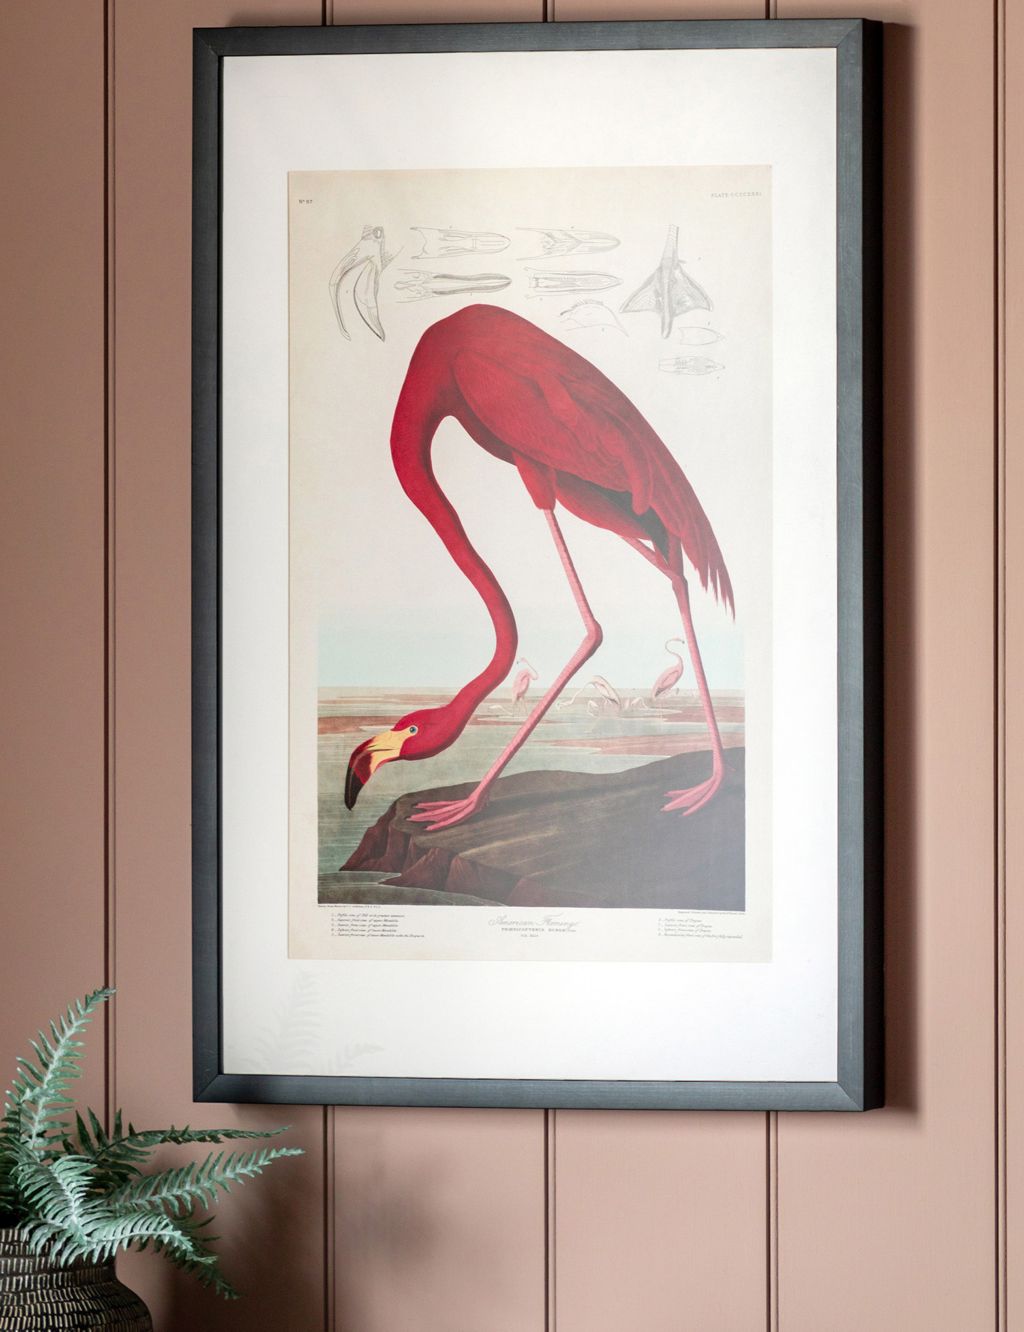 Curious Flamingo Rectangle Framed Art